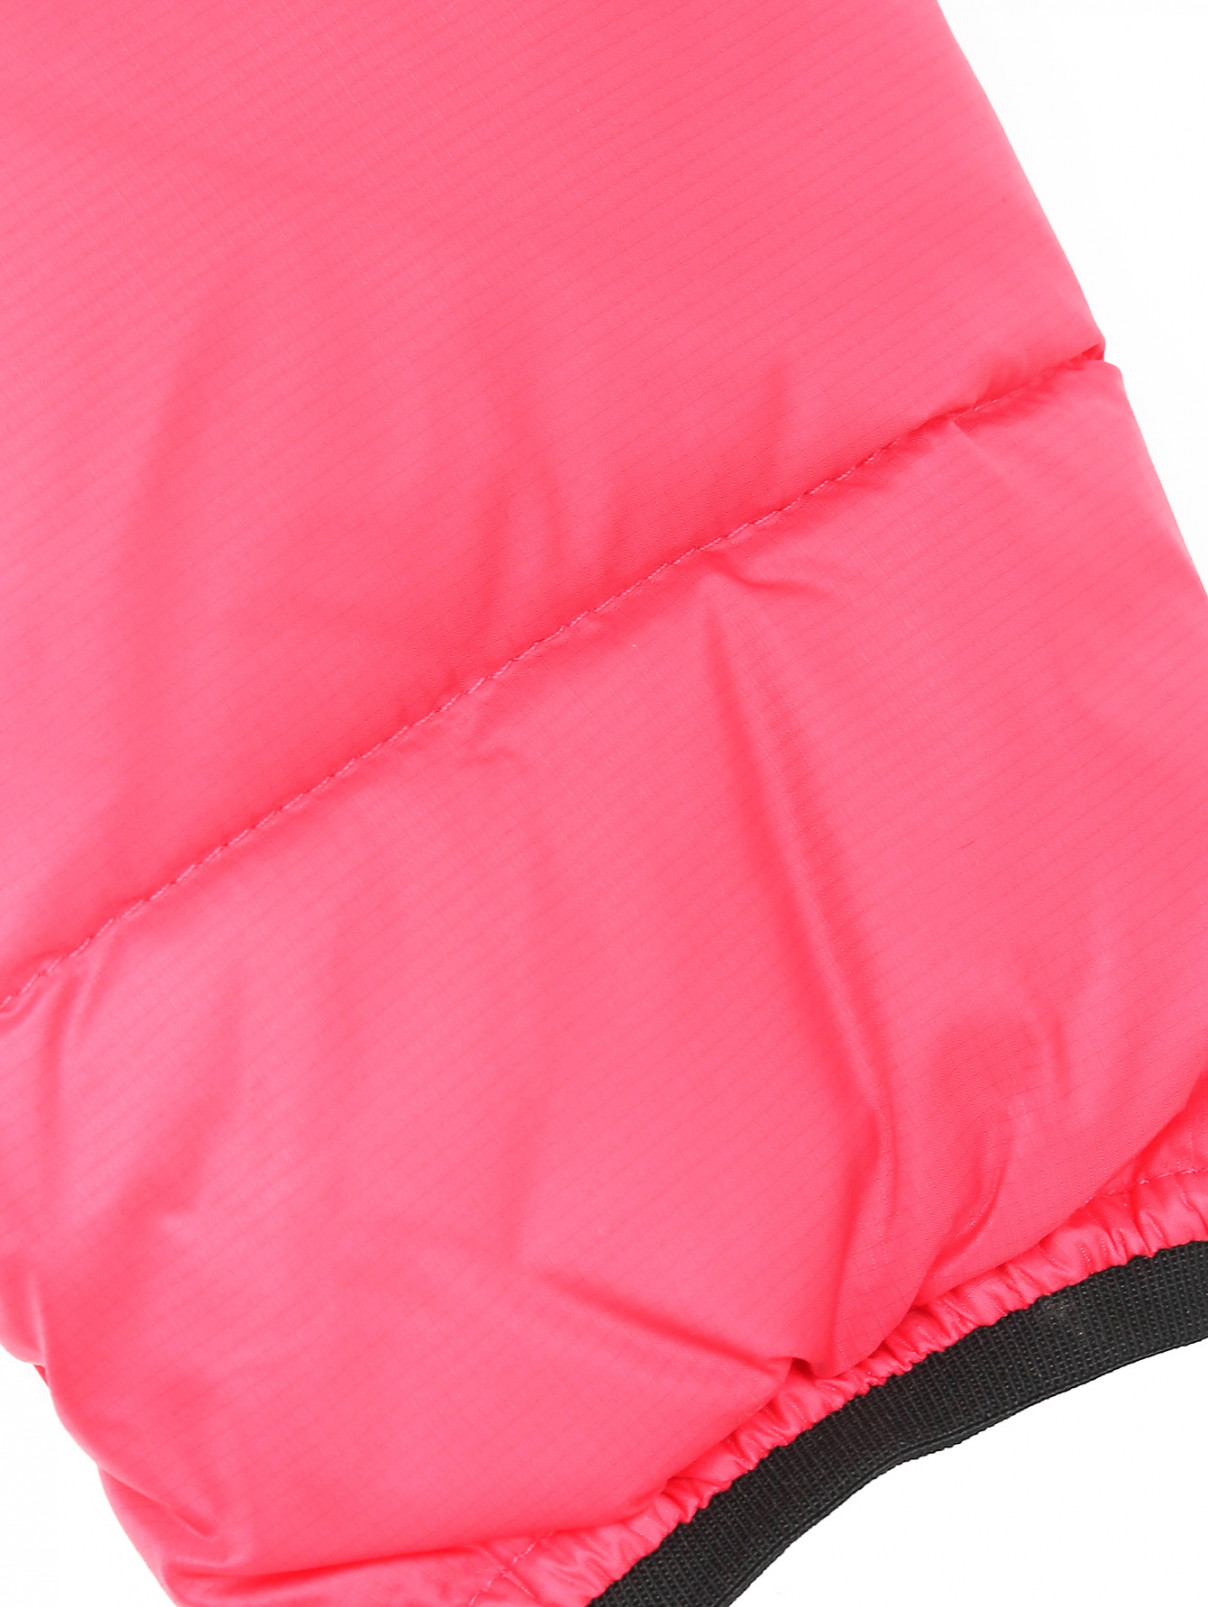 Куртка с капюшоном-шлемом Ai Riders  –  Деталь  – Цвет:  Розовый